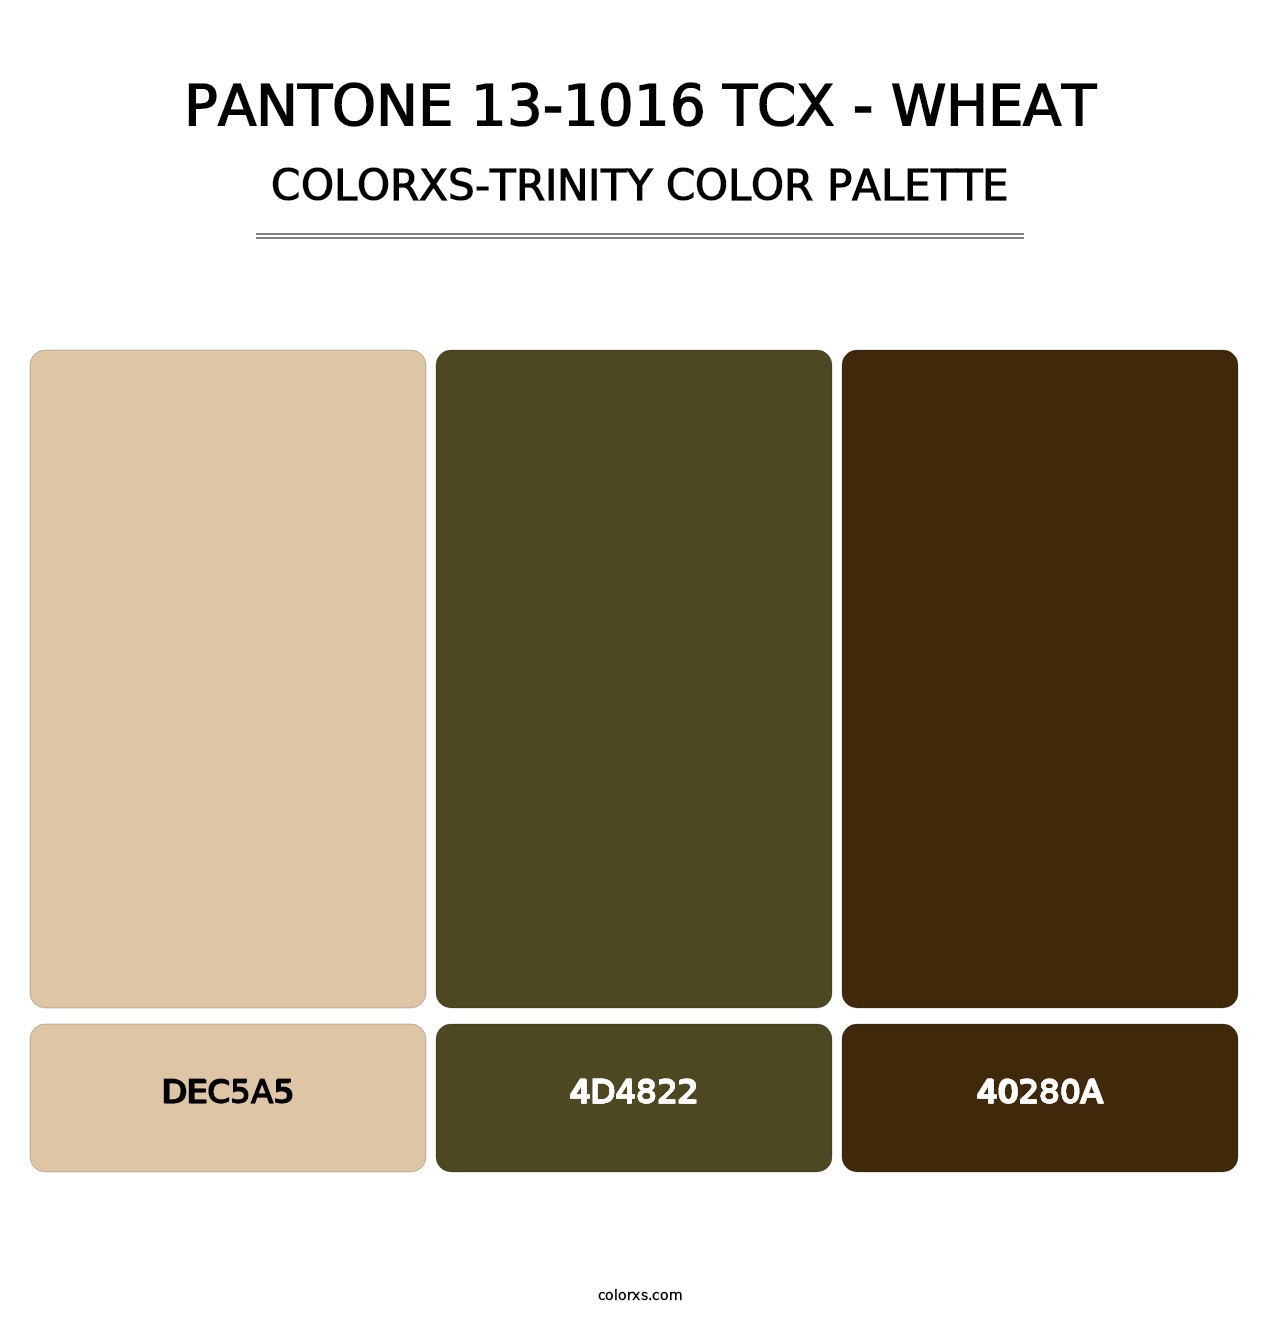 PANTONE 13-1016 TCX - Wheat - Colorxs Trinity Palette